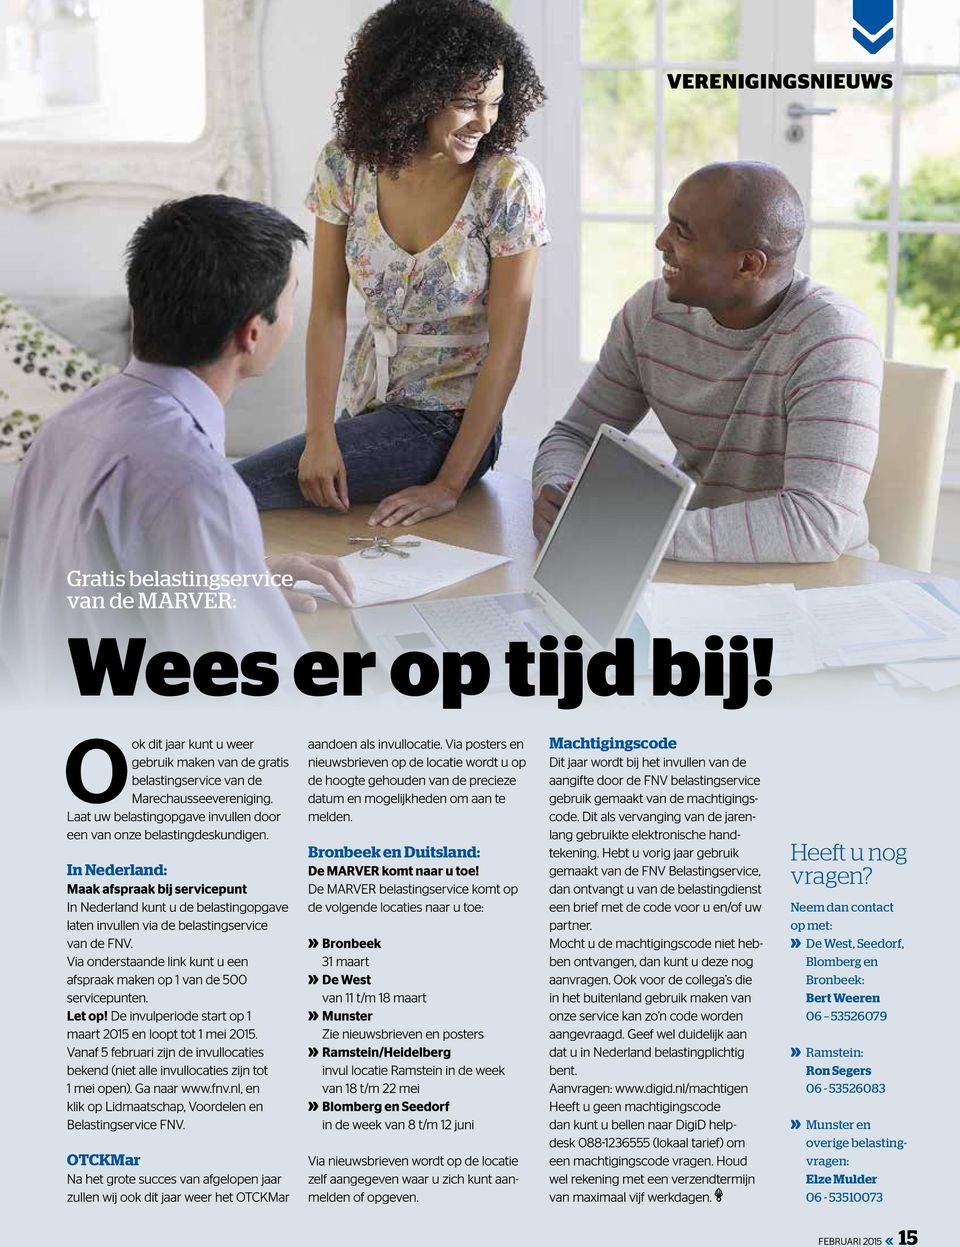 In Nederland: Maak afspraak bij servicepunt In Nederland kunt u de belastingopgave laten invullen via de belastingservice van de FNV.